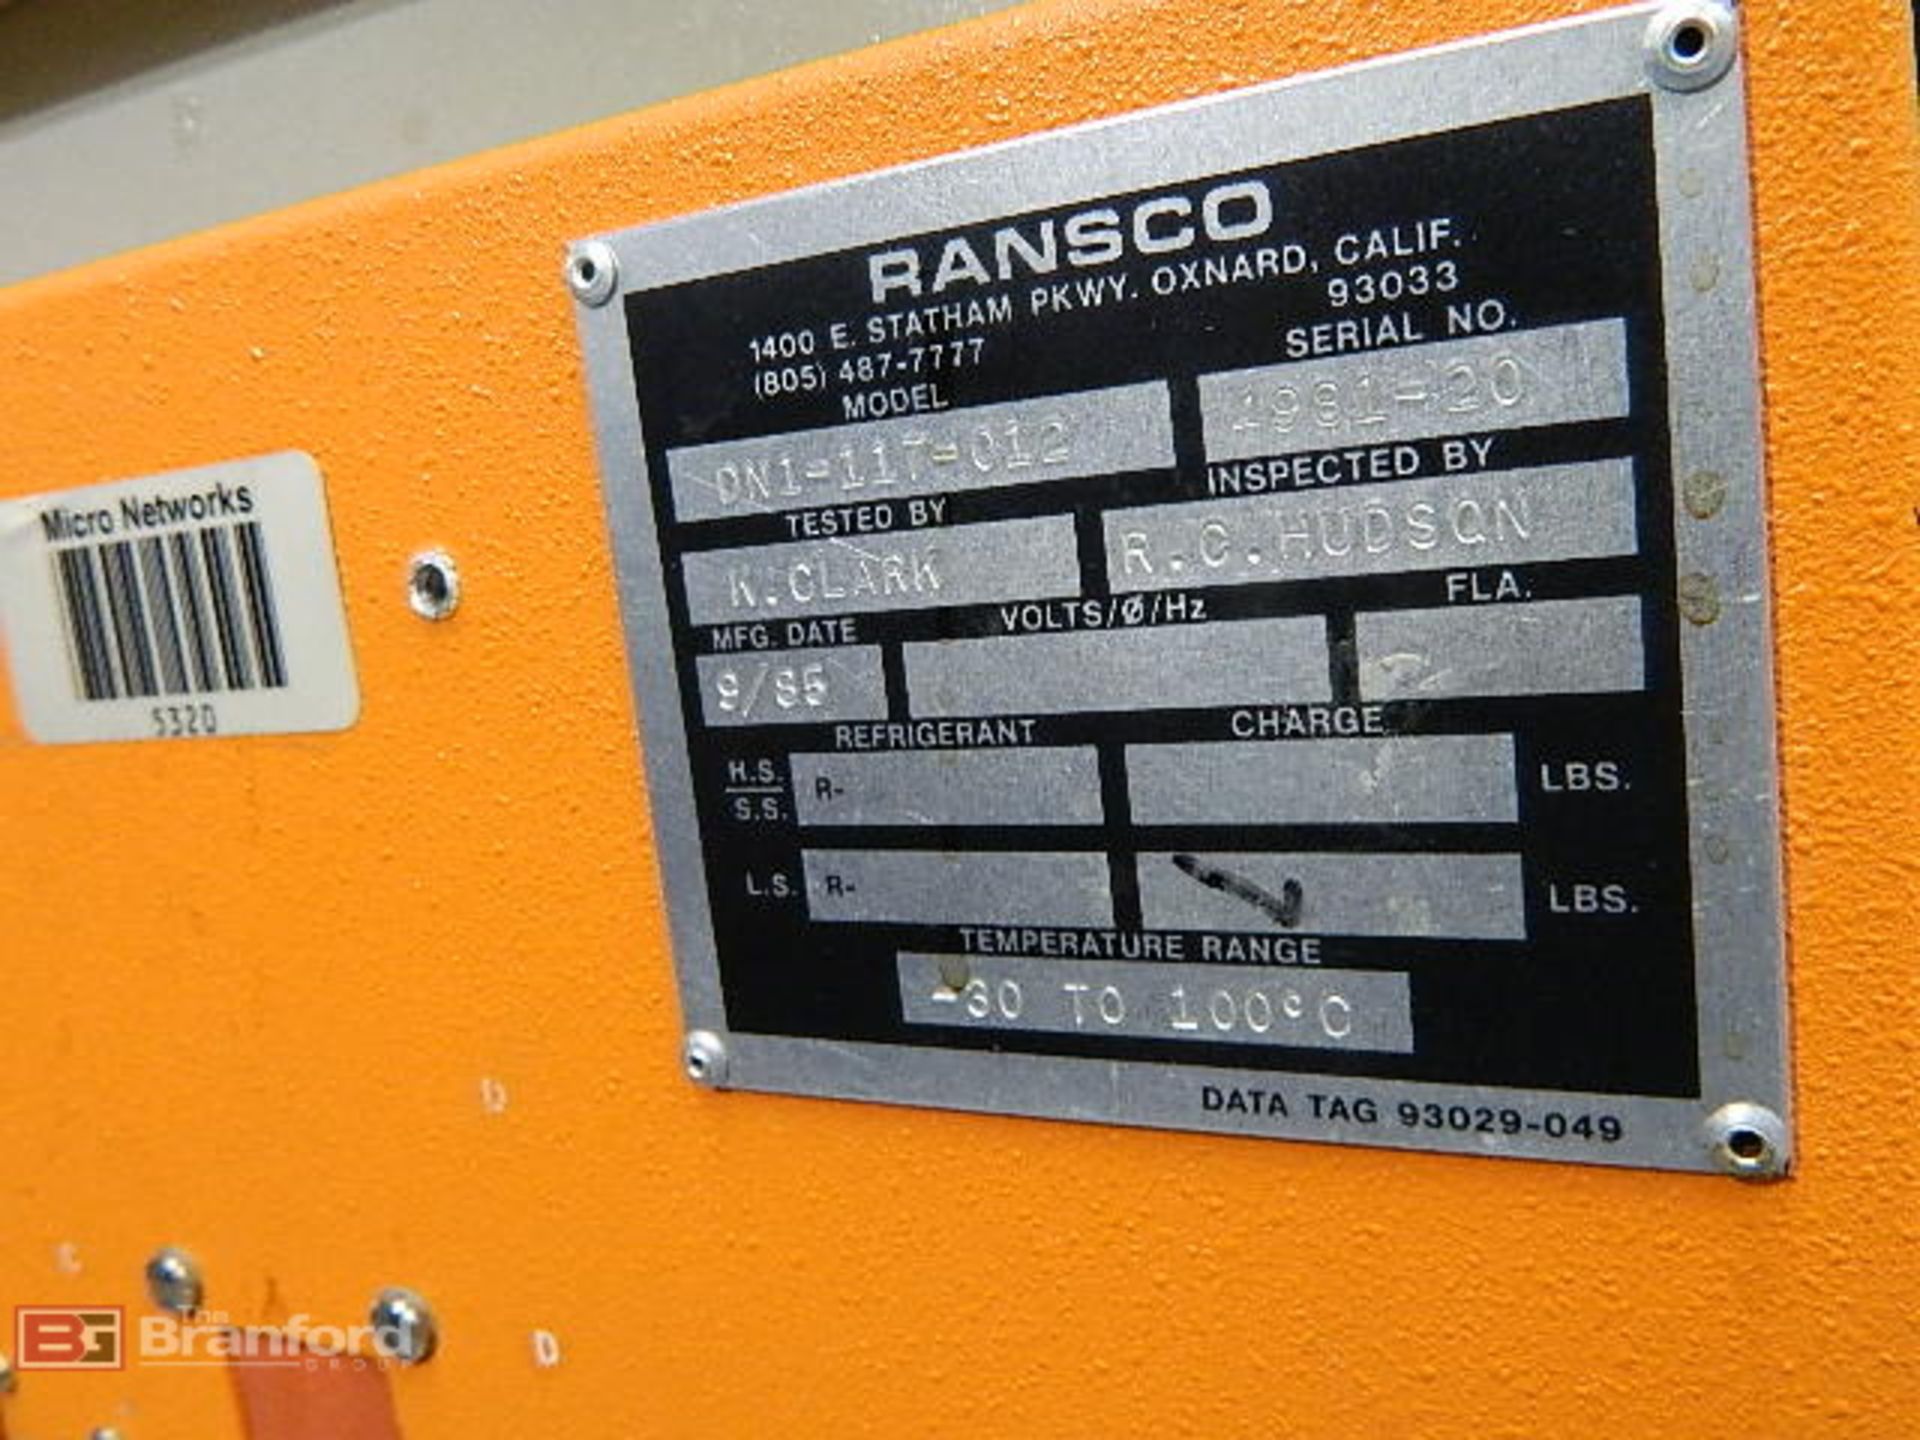 Ransco Oven Temp Range -30° to 100°C - Image 2 of 4